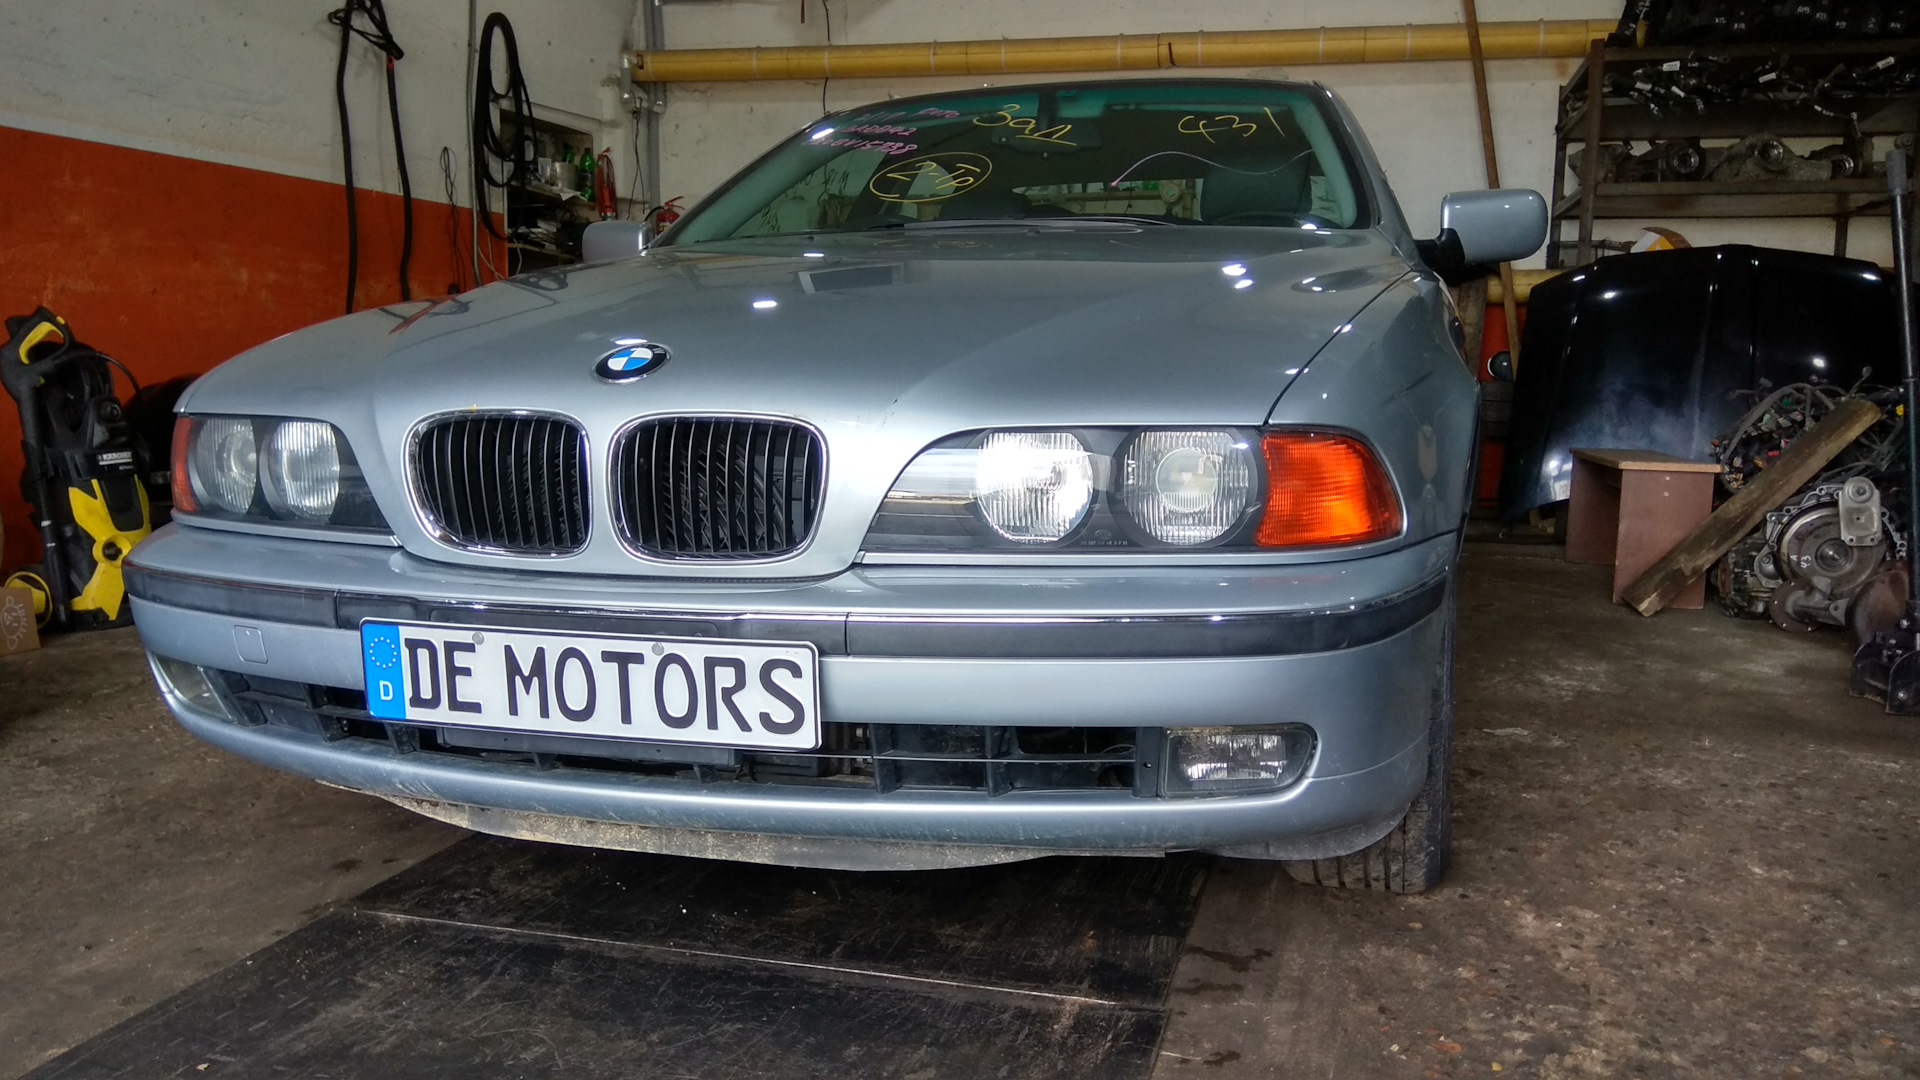 Ук 1998 года. BMW 525i 1998. BMW 525 1998 года выпуска. BMW 525 1998 года турбо дизель. 309 Цвет БМВ.